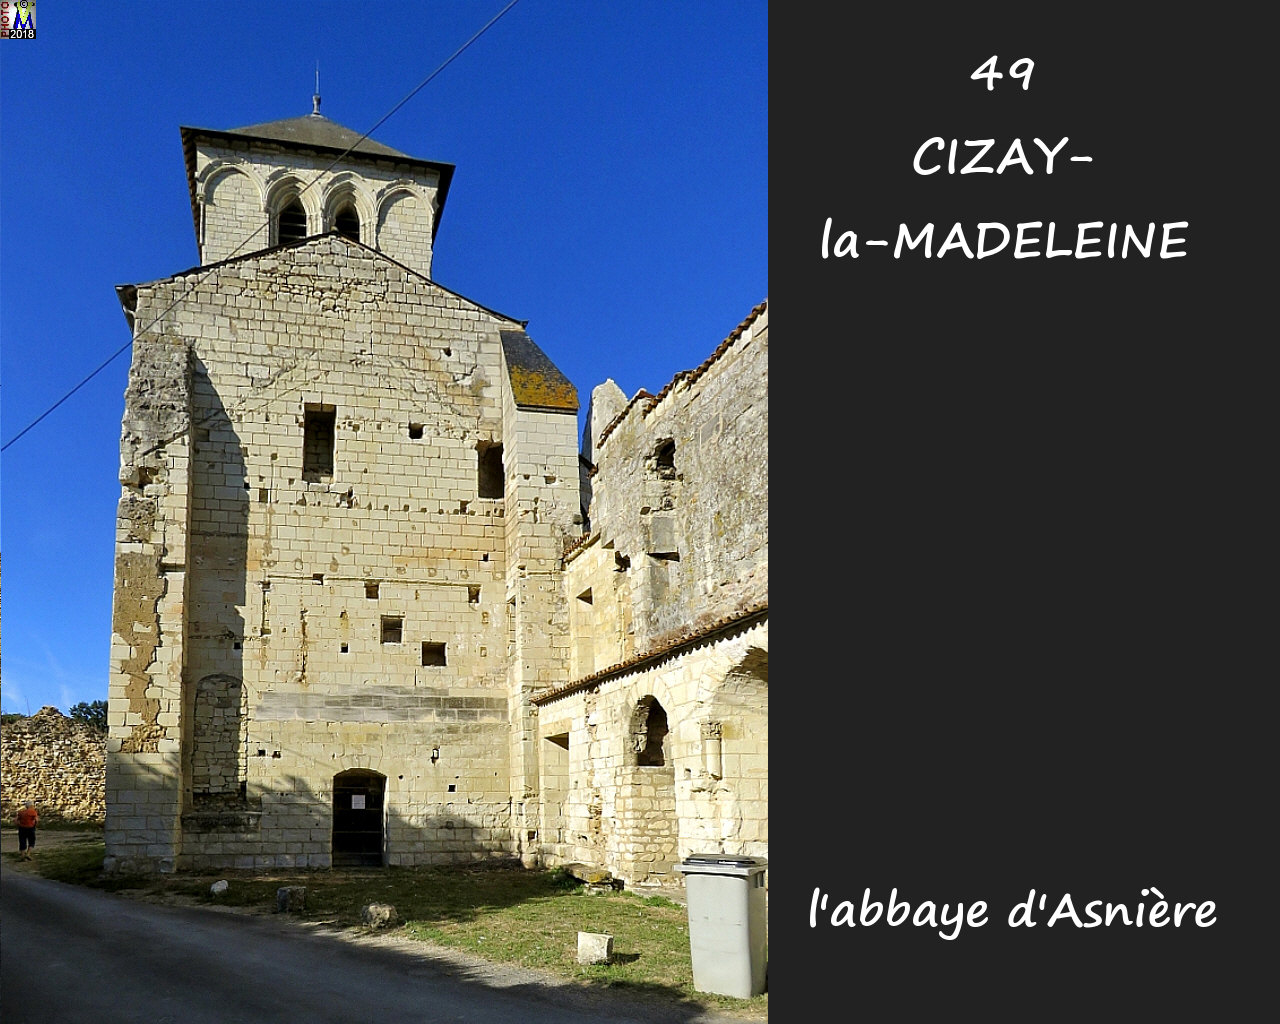 49CIZAY-MADELEINE_abbaye_1014.jpg